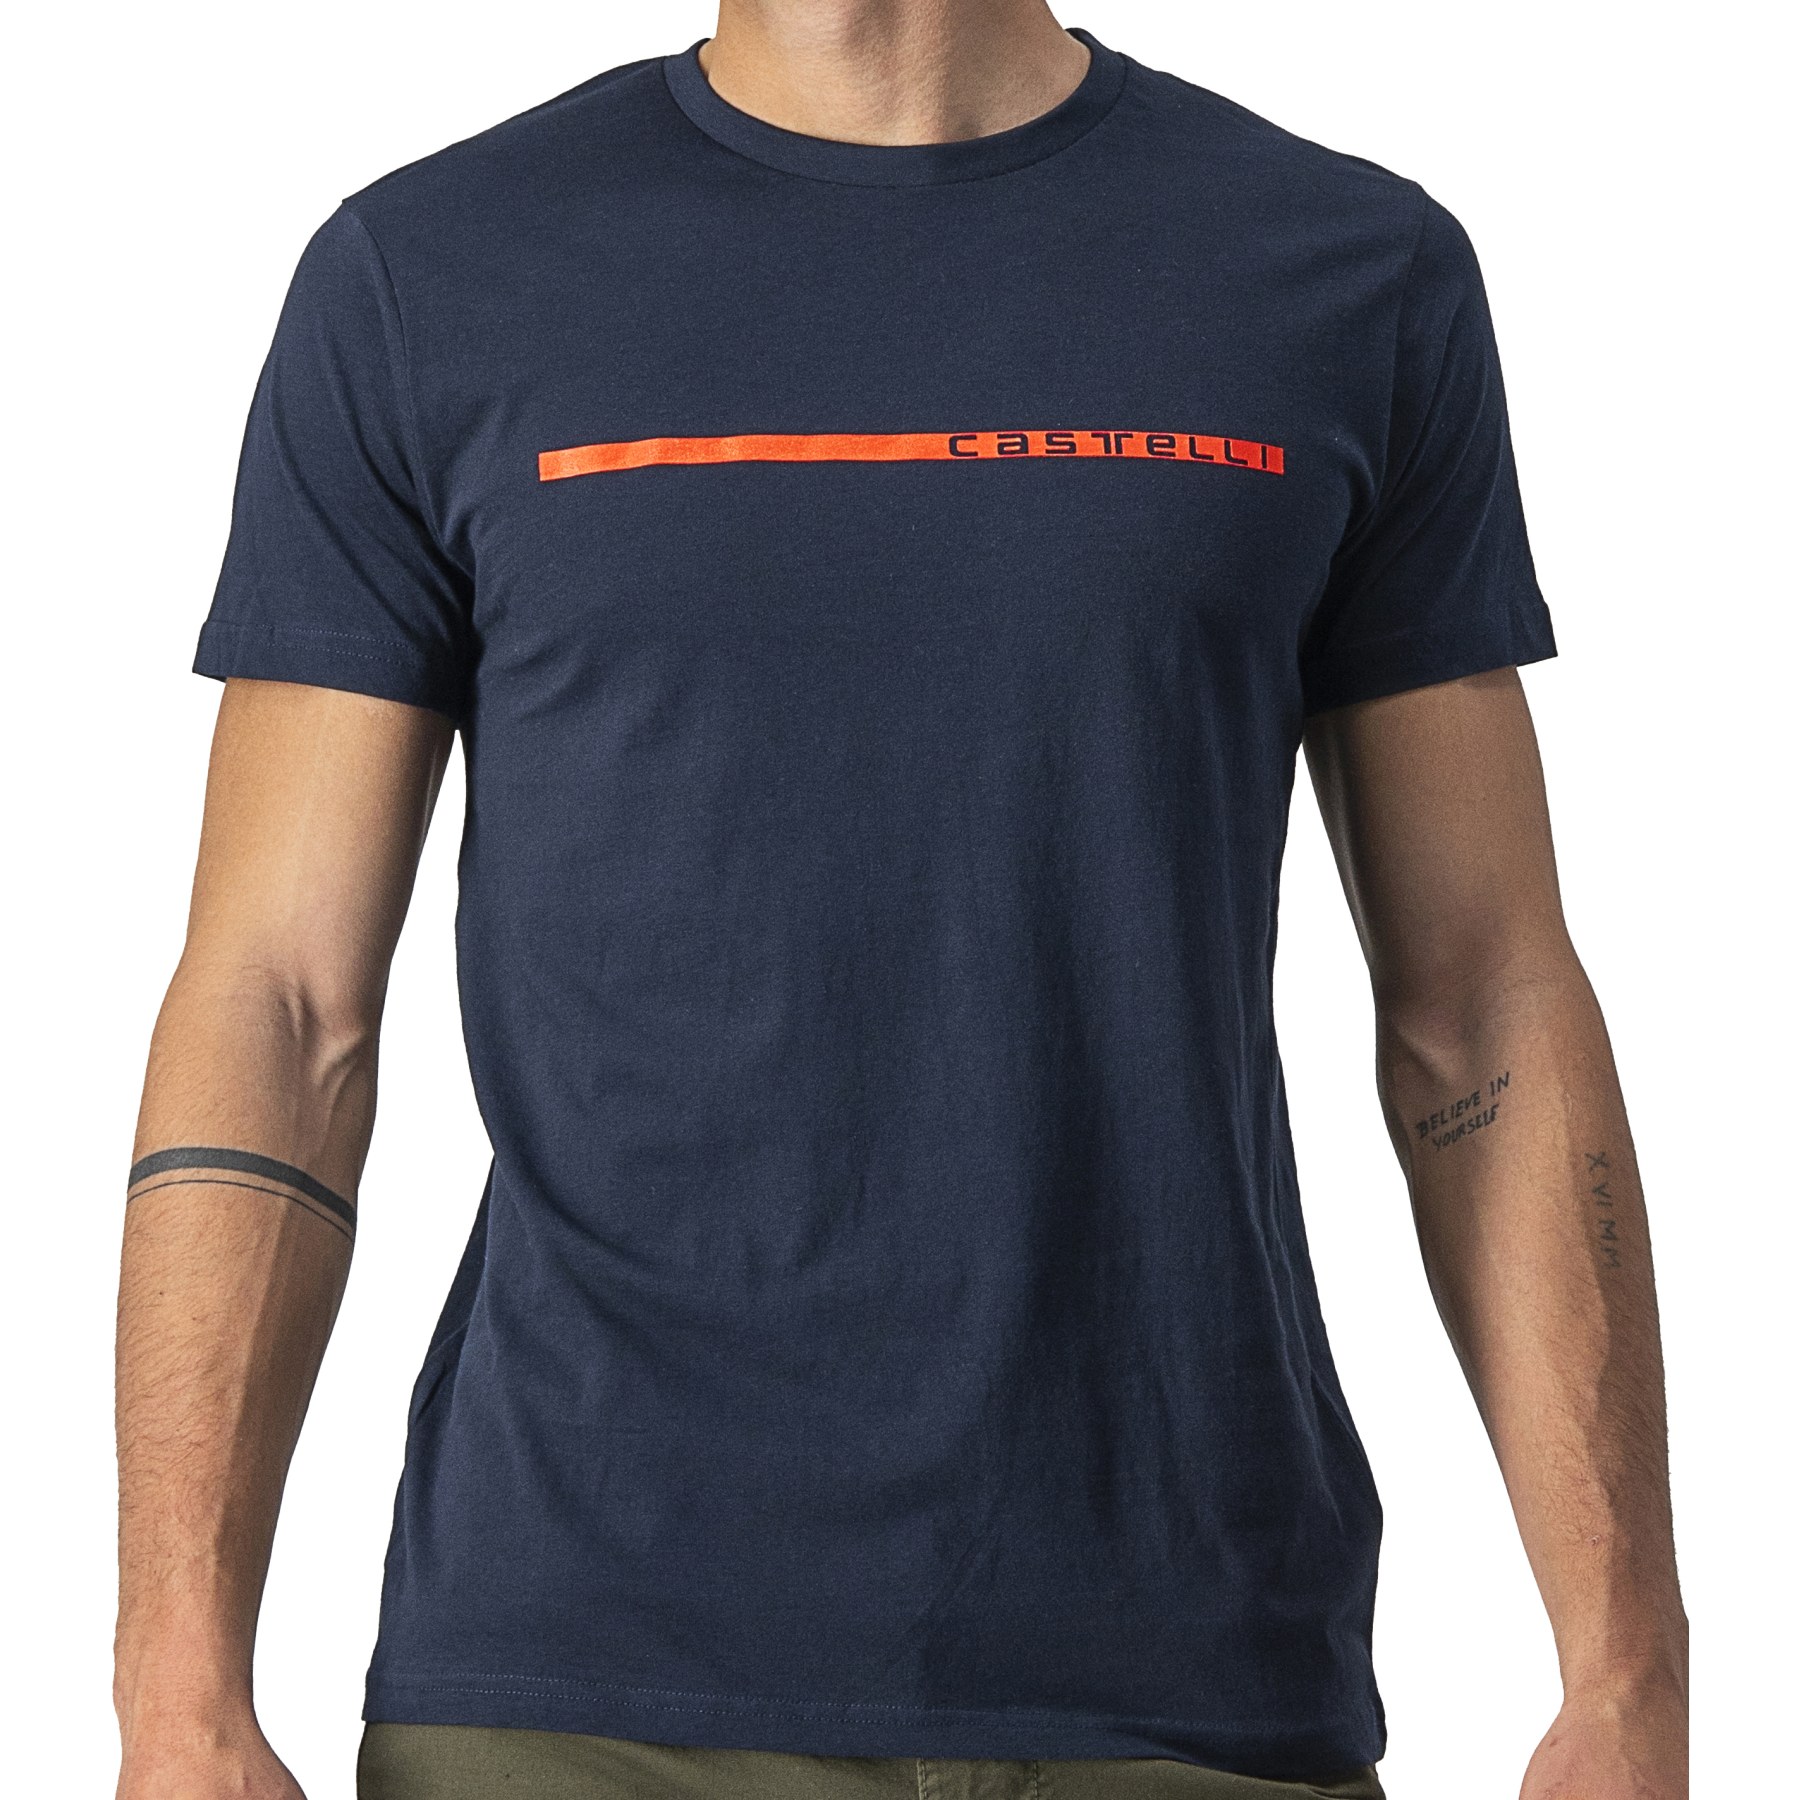 Produktbild von Castelli Ventaglio T-Shirt - savile blue/red 414